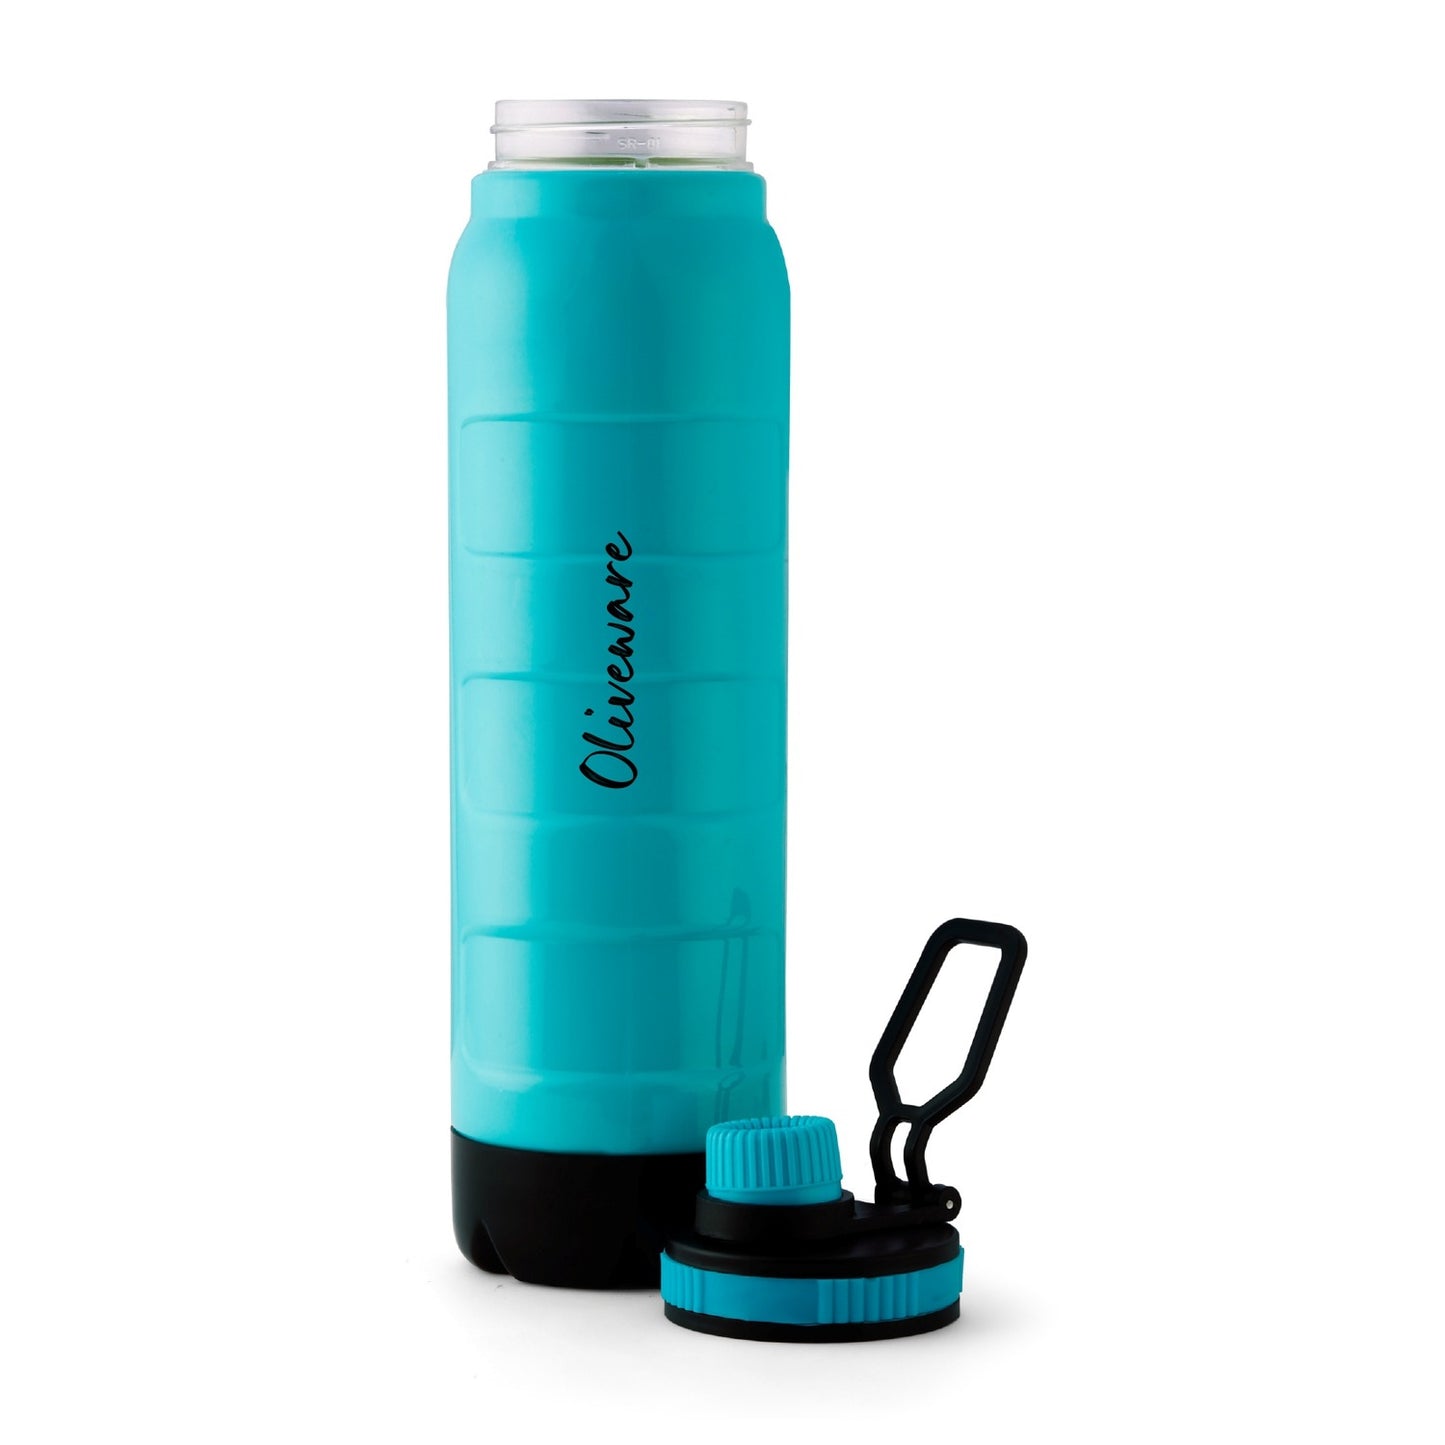 Boom Buzz Water Bottle (700 ML)